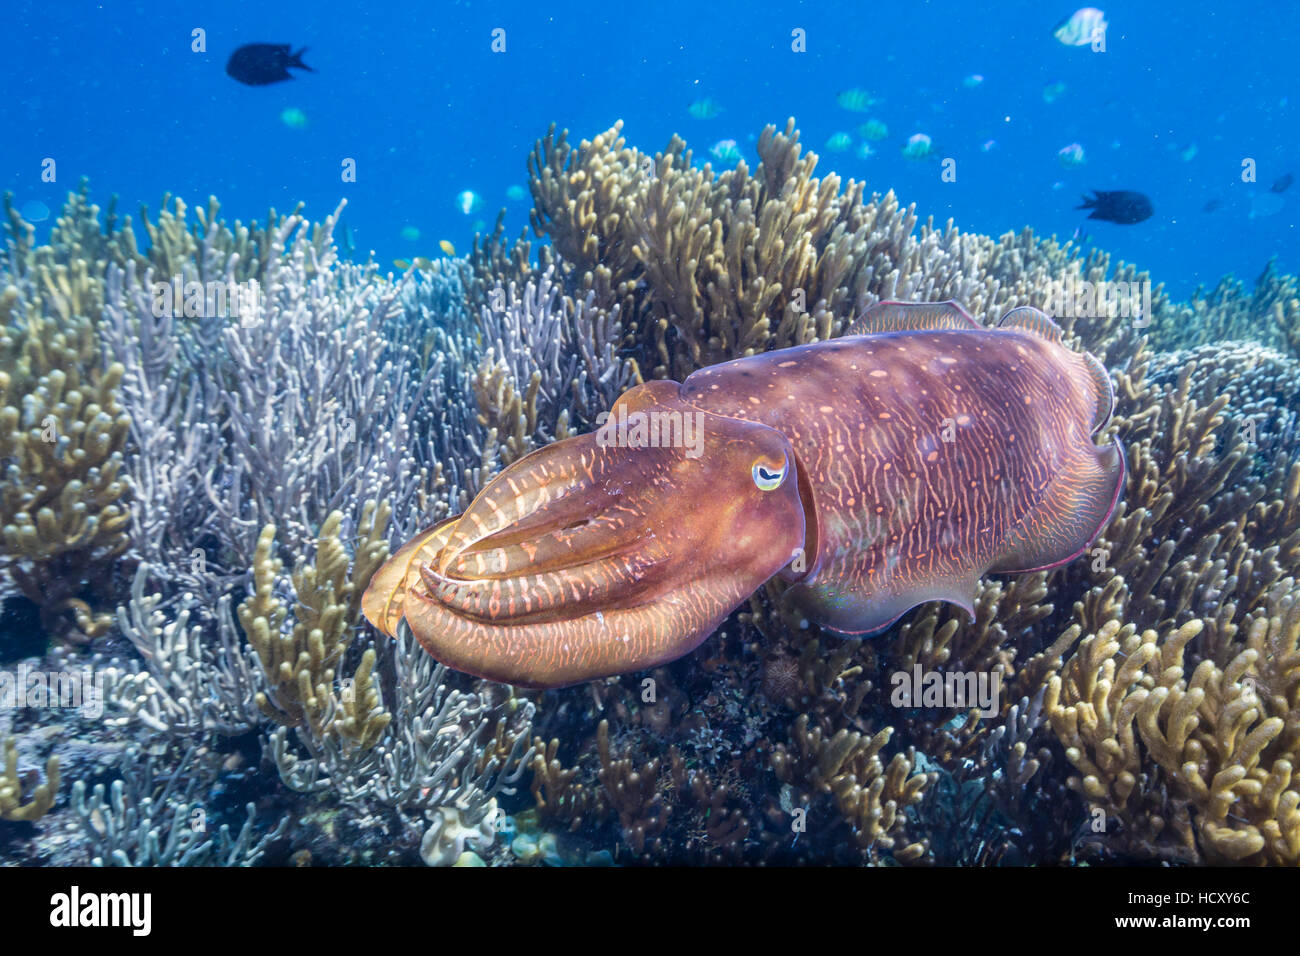 Adult Broadclub Tintenfisch (Sepia finden) auf dem Riff auf Sebayur Island, Meer Flores, Indonesien Stockfoto